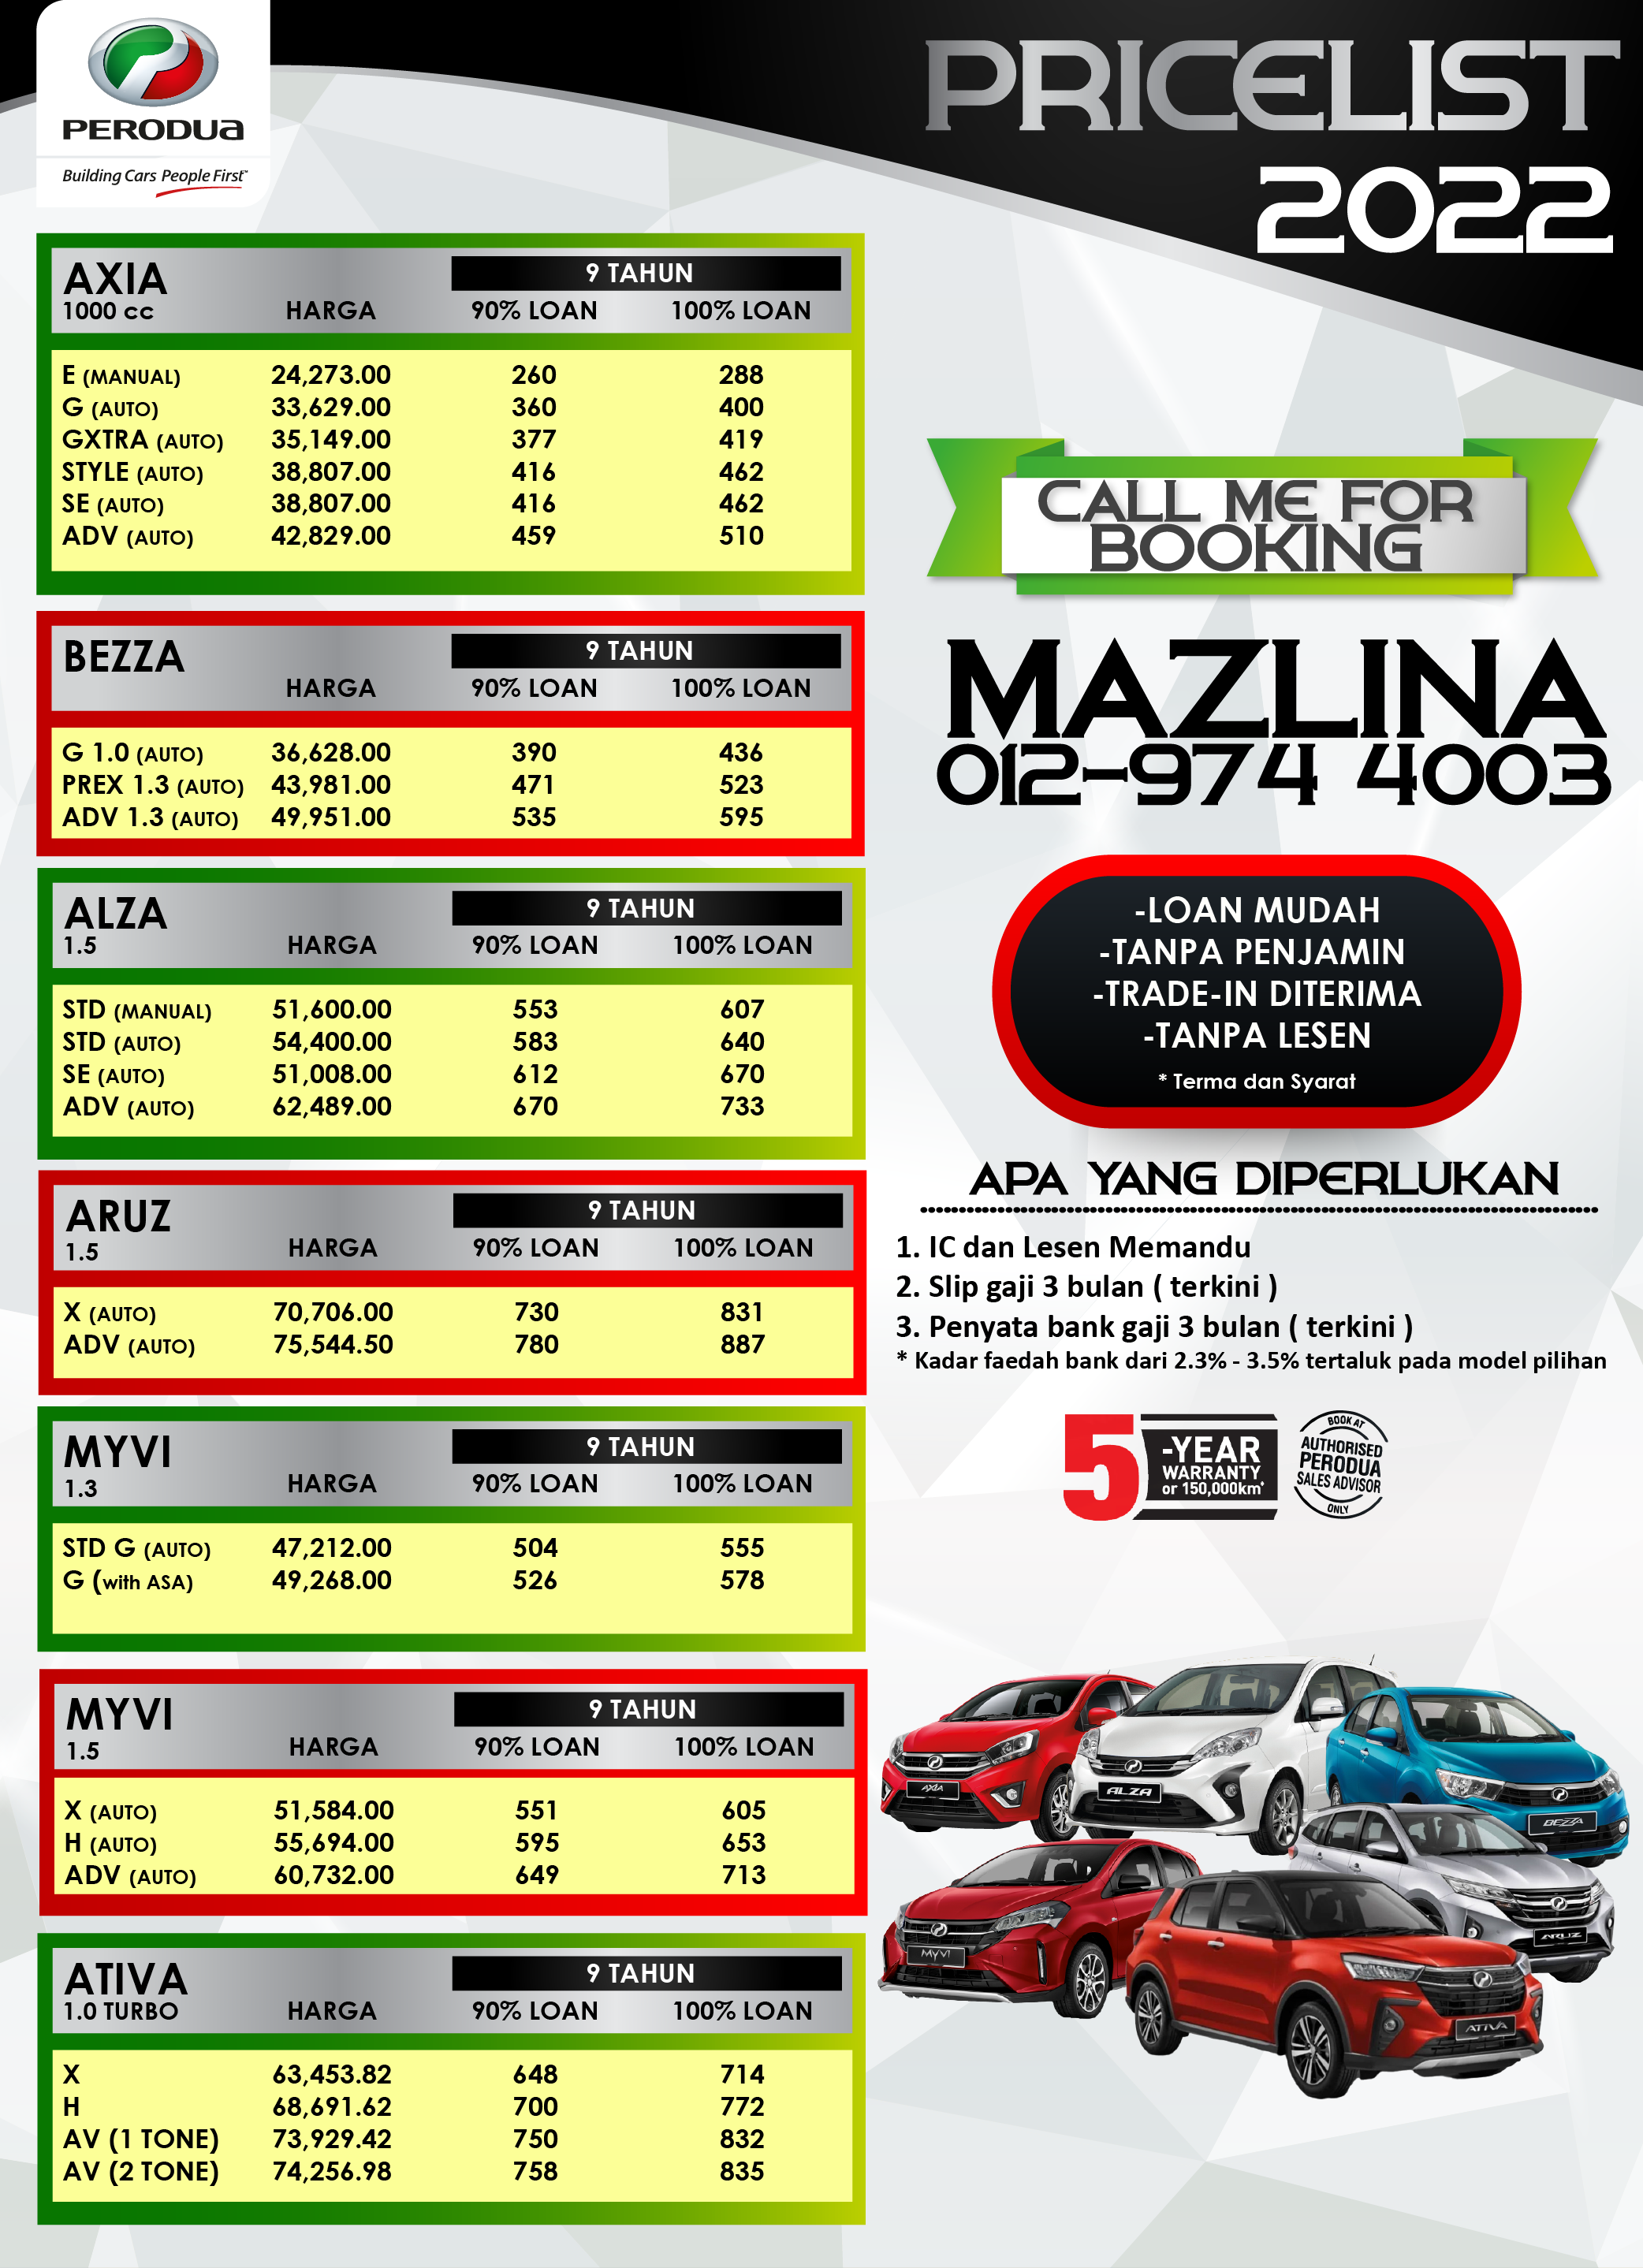 Price list 2022 perodua 2022 Perodua